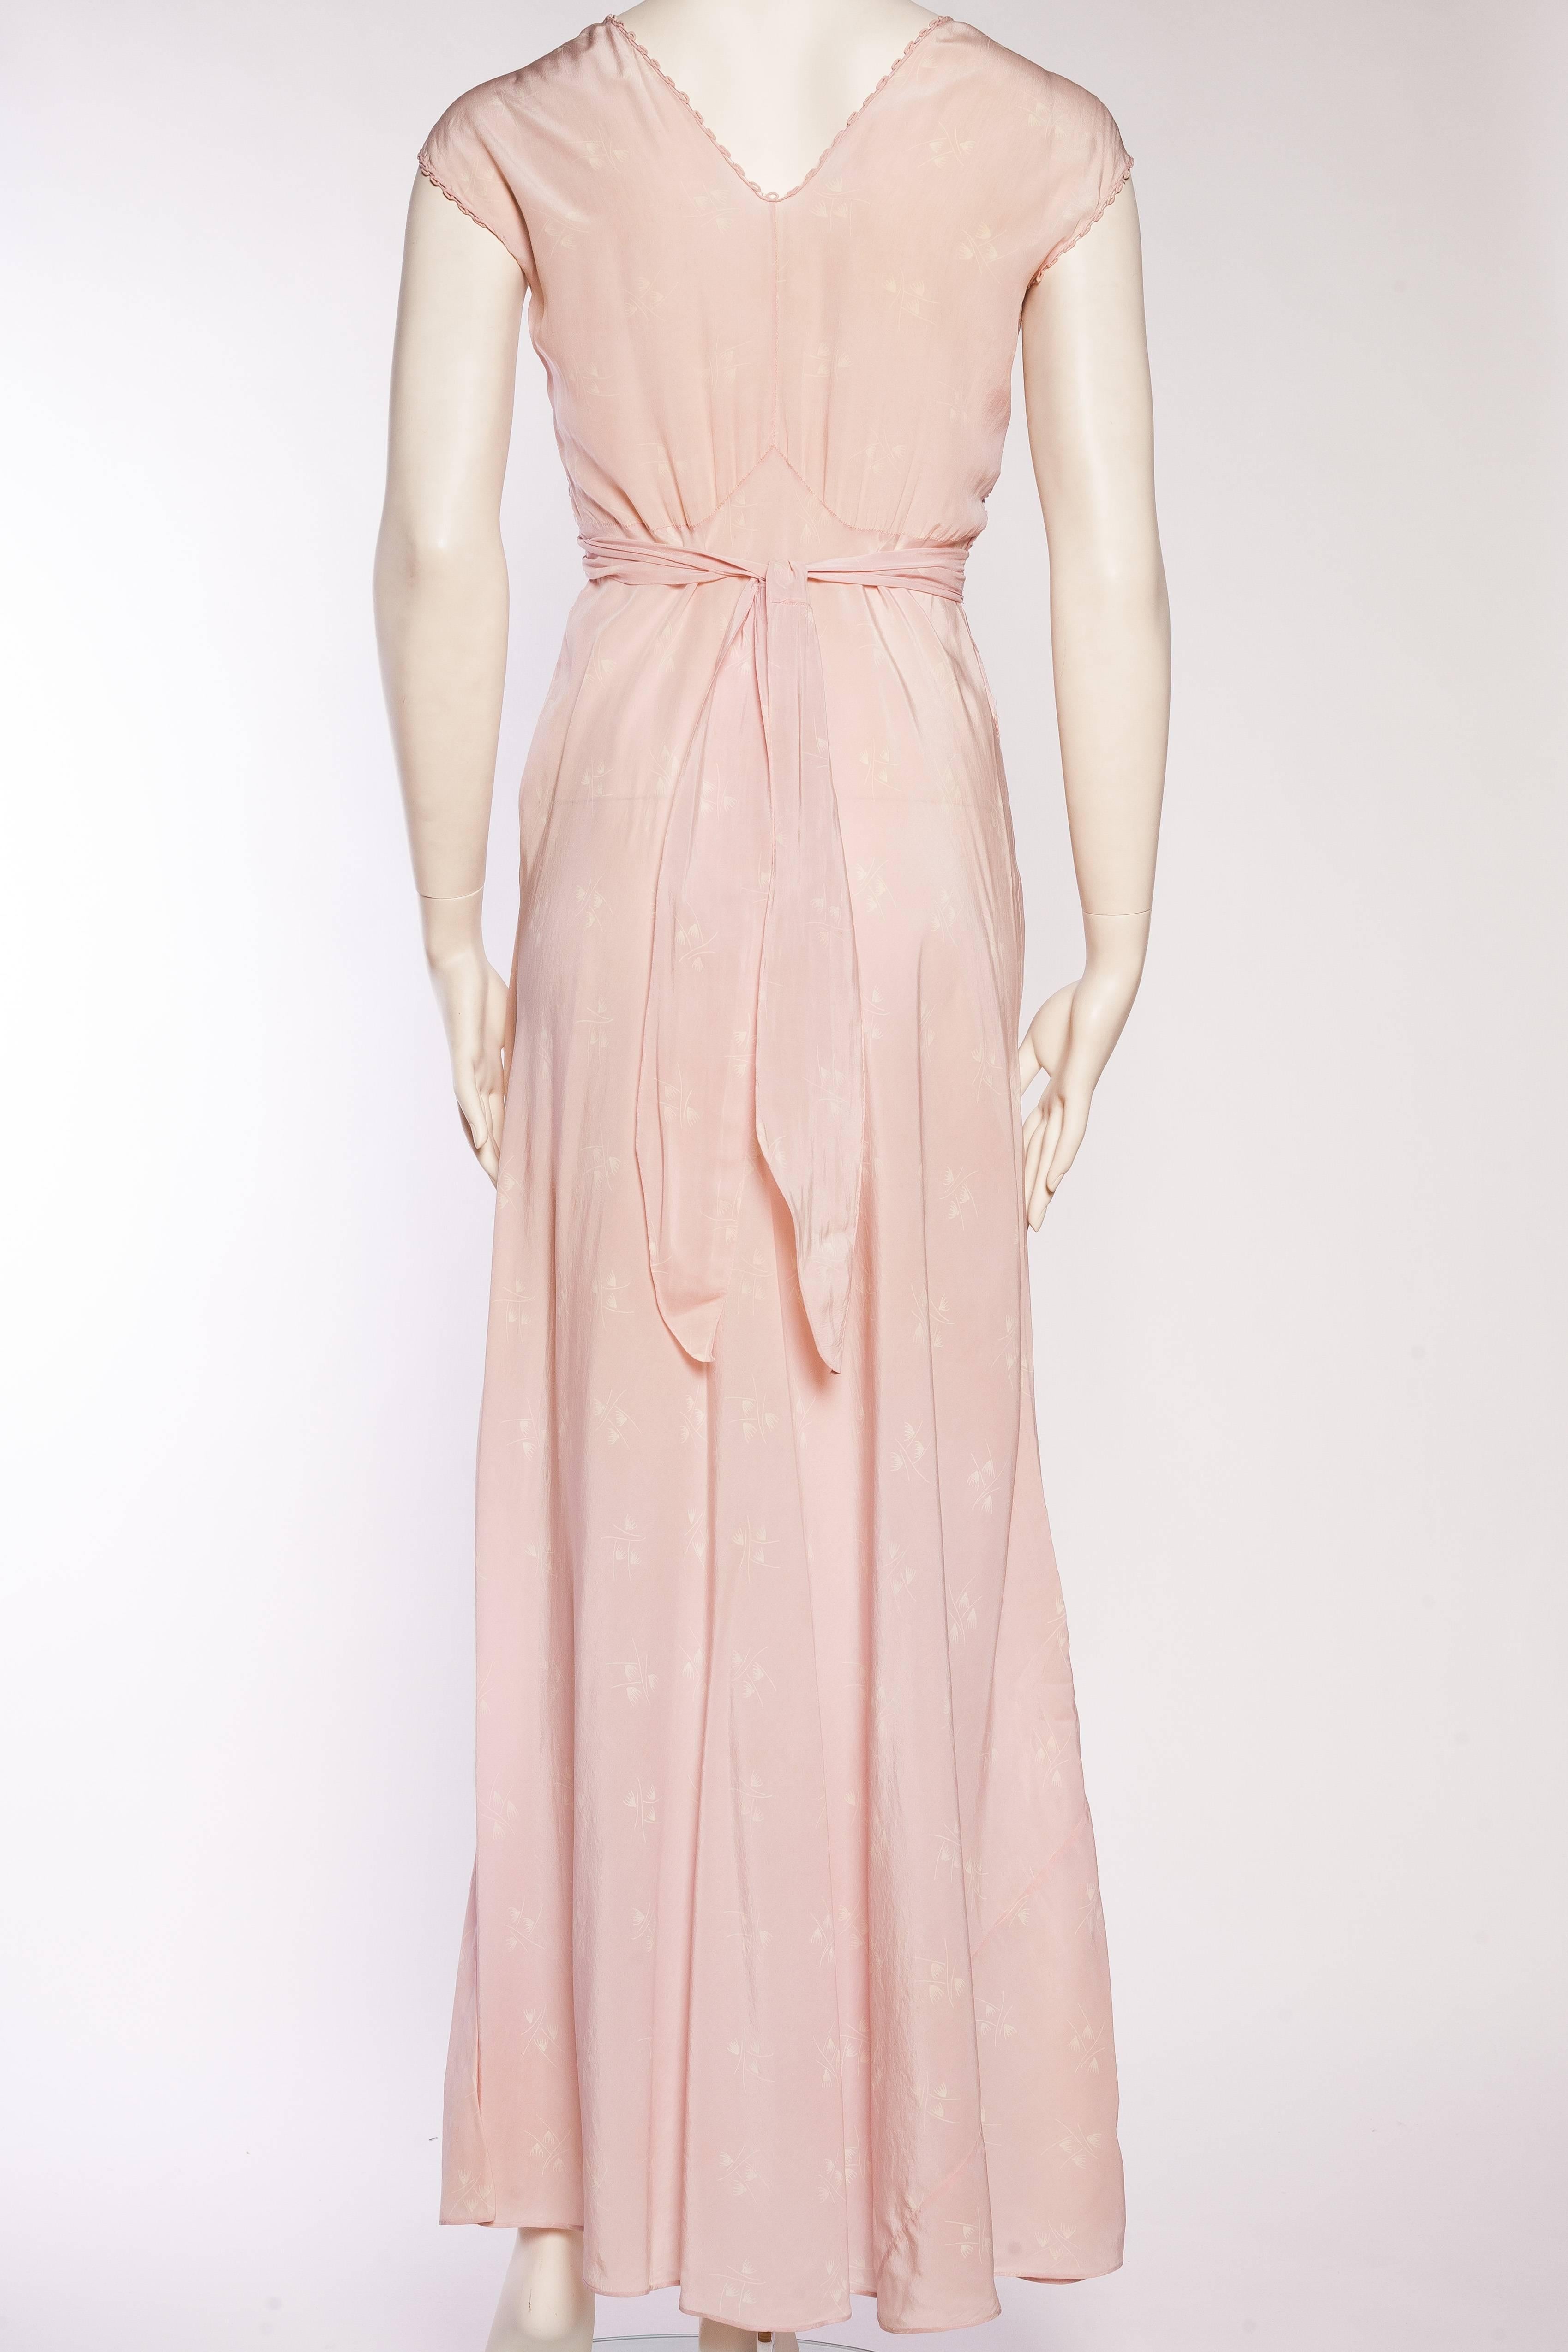 Women's or Men's 1930 bias lingerie silk slip gown